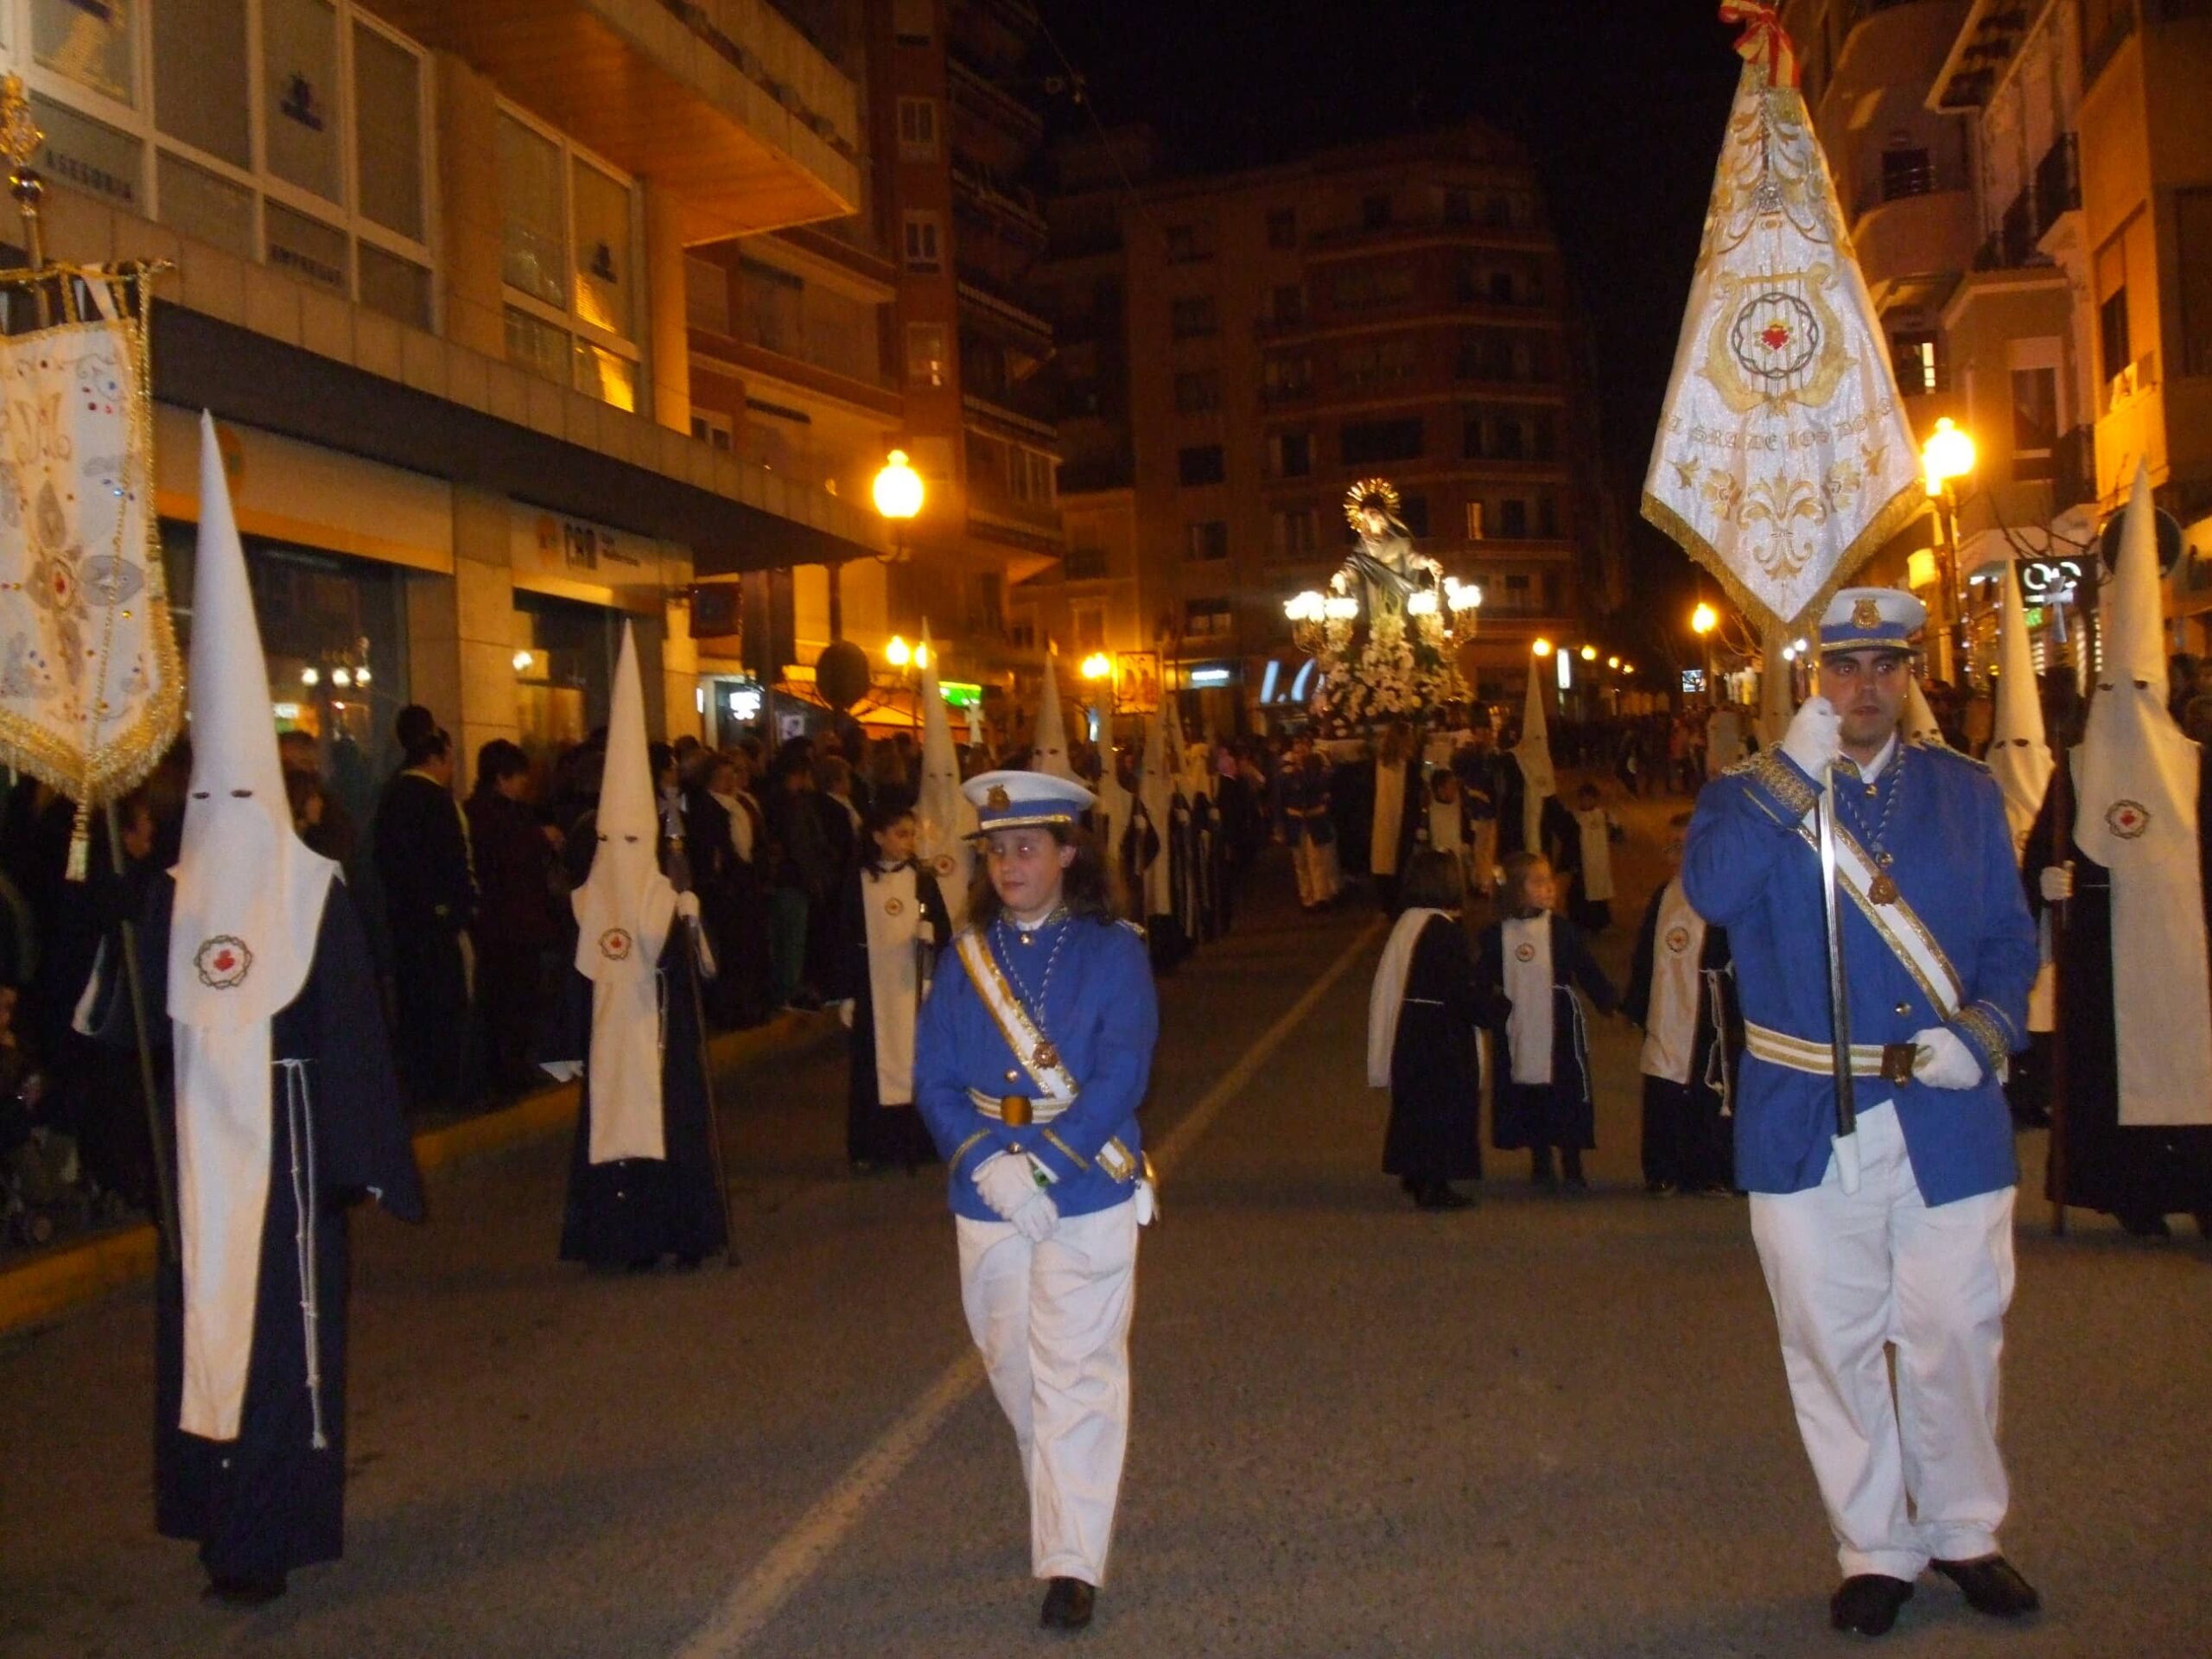 La Junta Mayor de Cofradías recuerda que se mantienen las celebraciones litúrgicas de Semana Santa